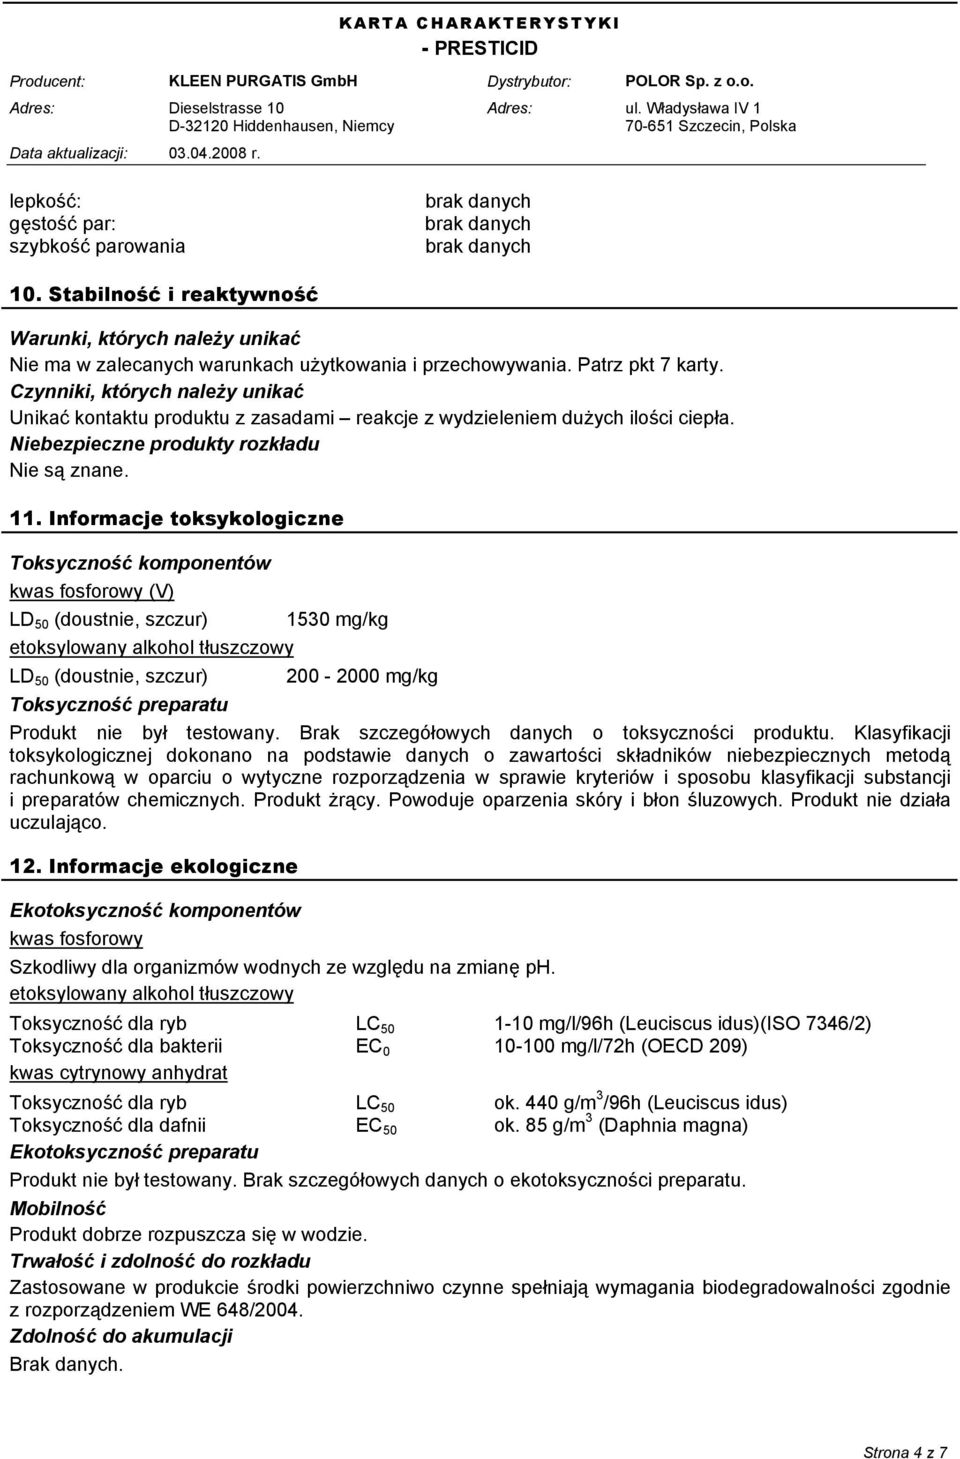 Informacje toksykologiczne Toksyczność komponentów kwas fosforowy (V) LD 50 (doustnie, szczur) 1530 mg/kg etoksylowany alkohol tłuszczowy LD 50 (doustnie, szczur) 200-2000 mg/kg Toksyczność preparatu